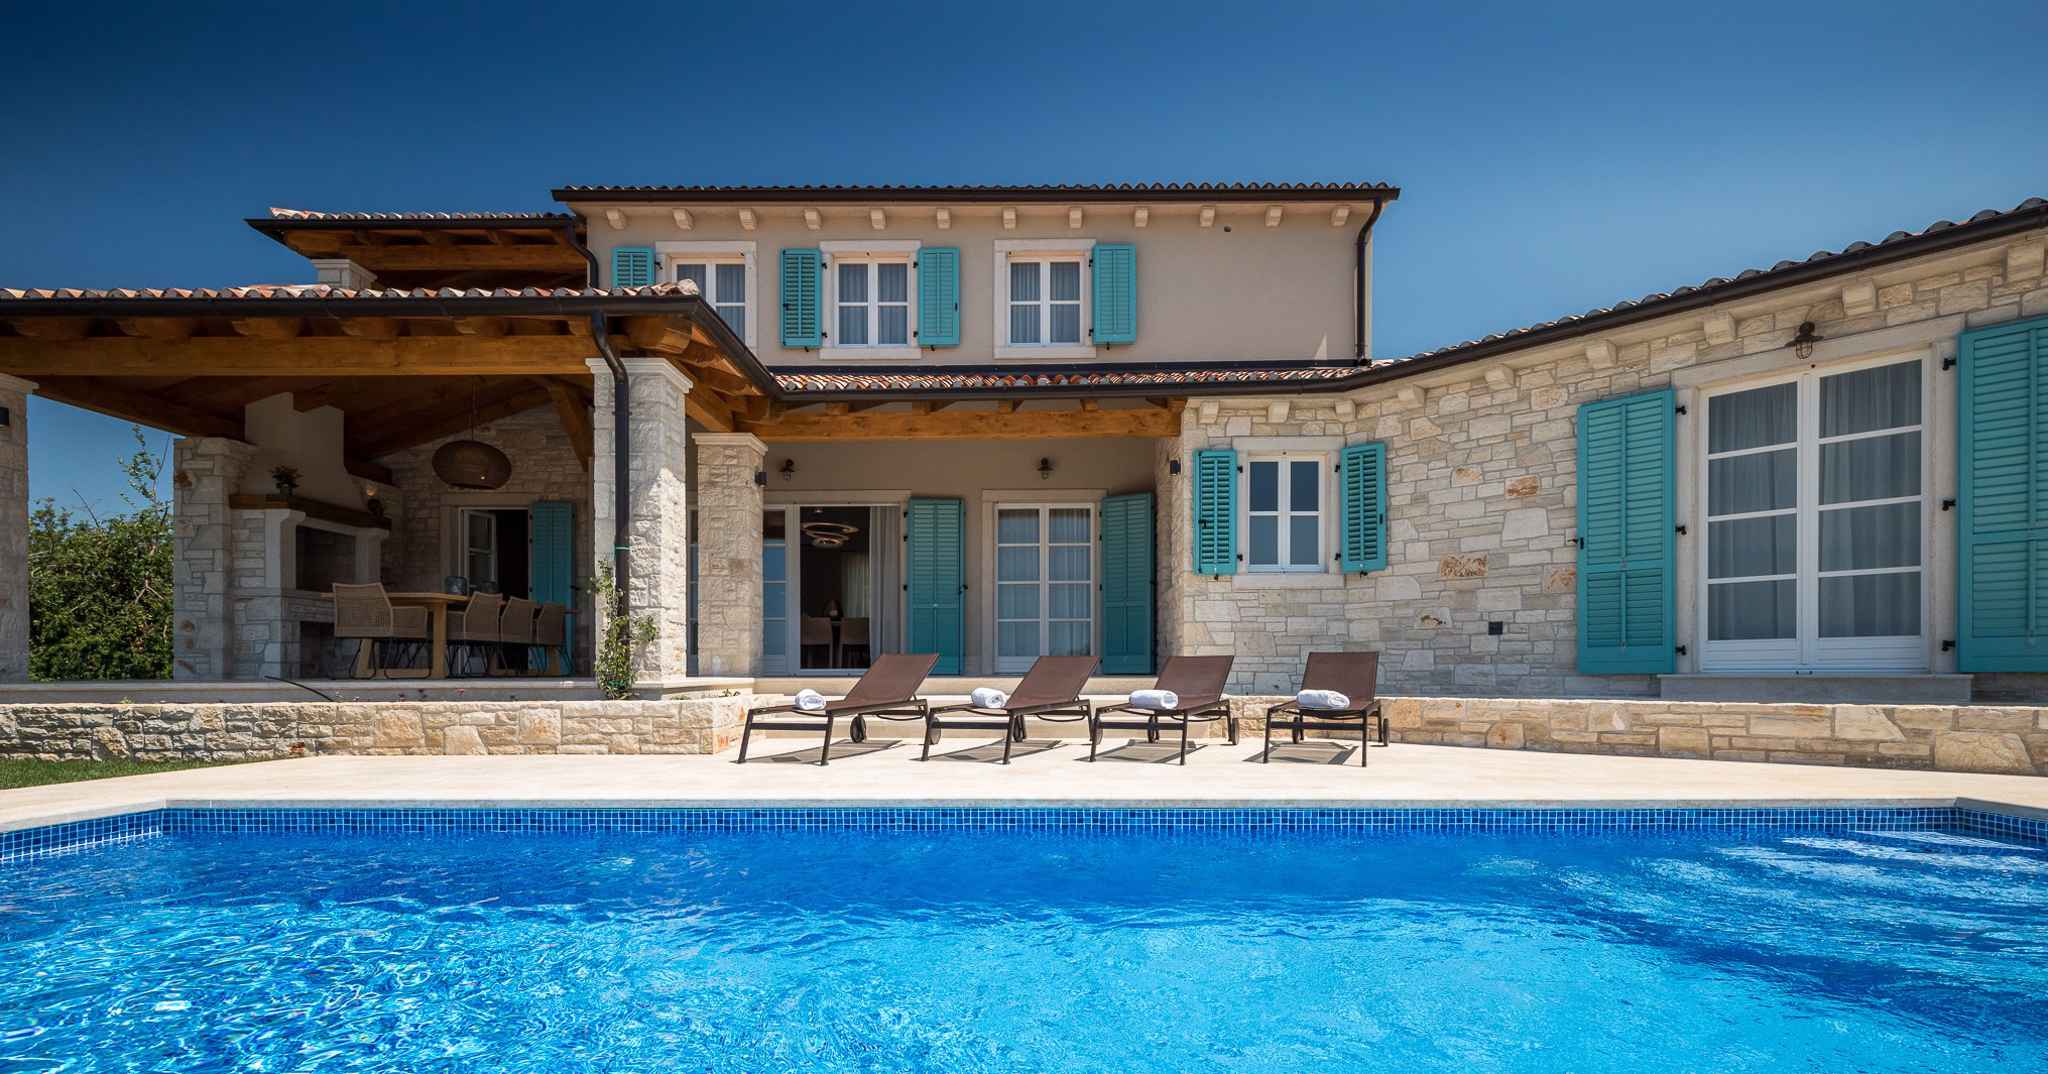 Villa mit Pool und gepflegtem Garten Ferienhaus in Istrien